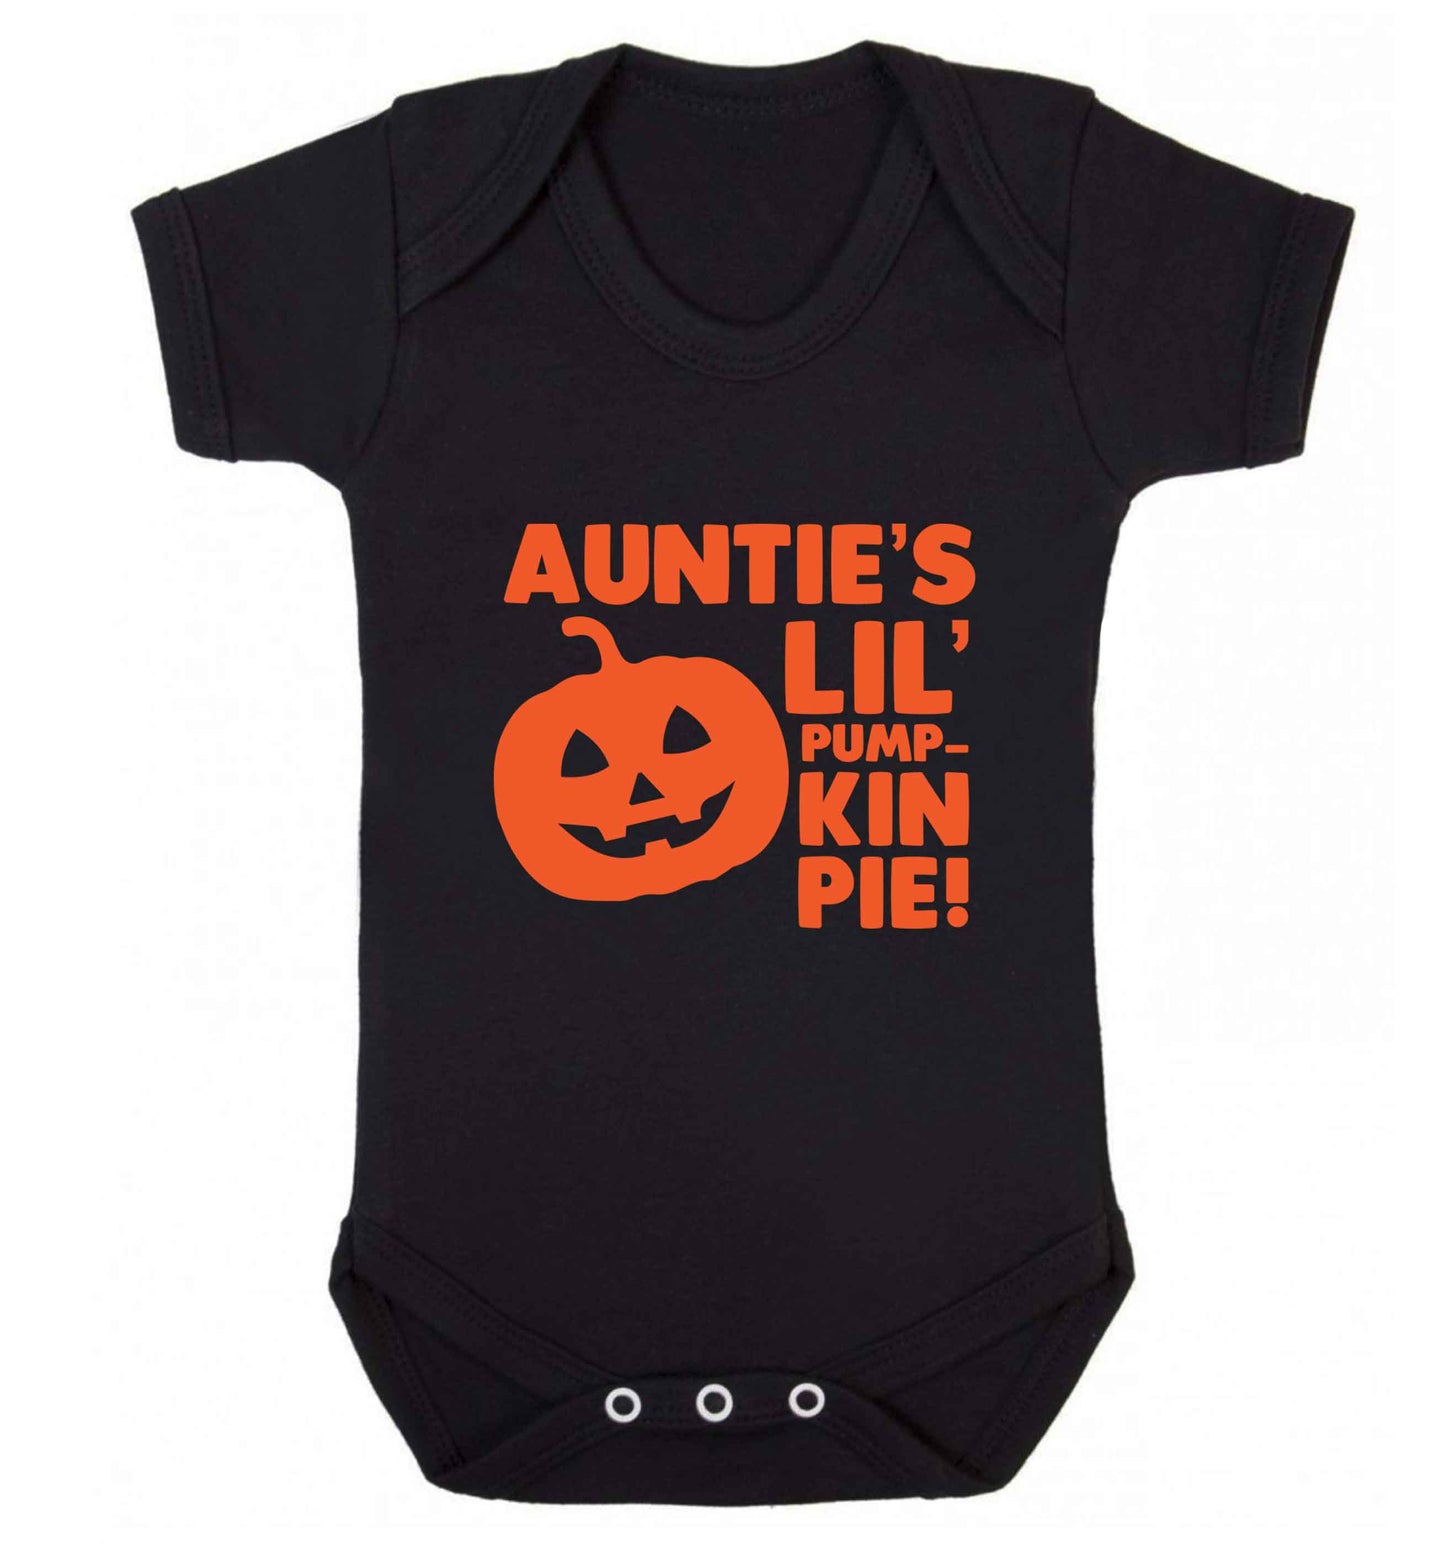 Auntie's lil' pumpkin pie baby vest black 18-24 months